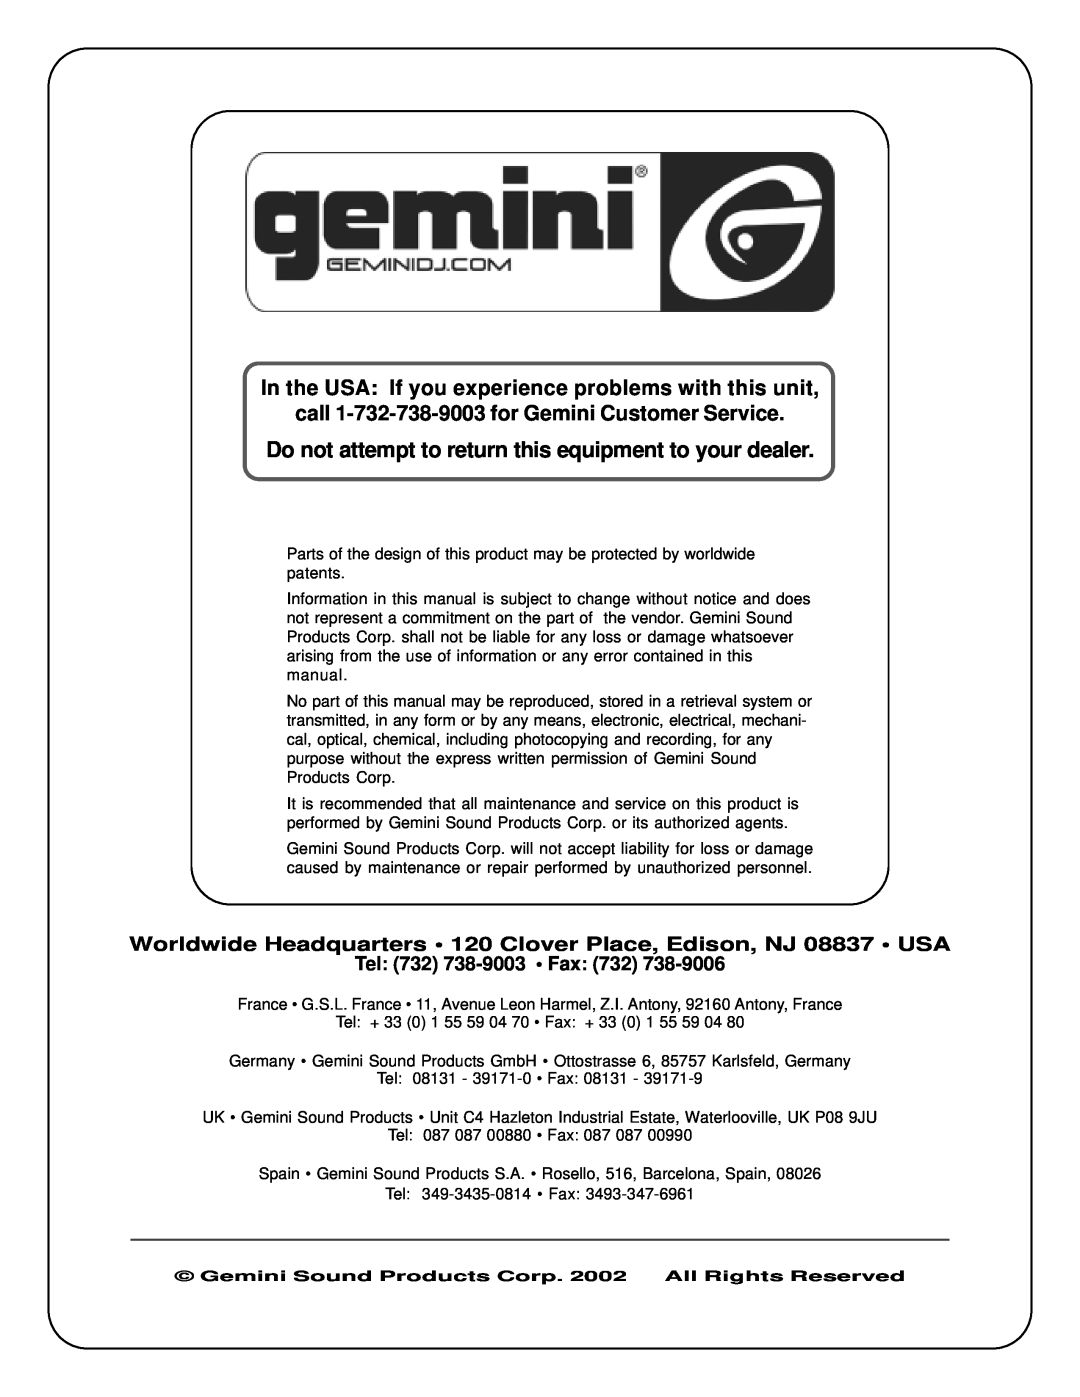 Gemini CD-2000X manual Tel 732 738-9003 Fax, call 1-732-738-9003for Gemini Customer Service 